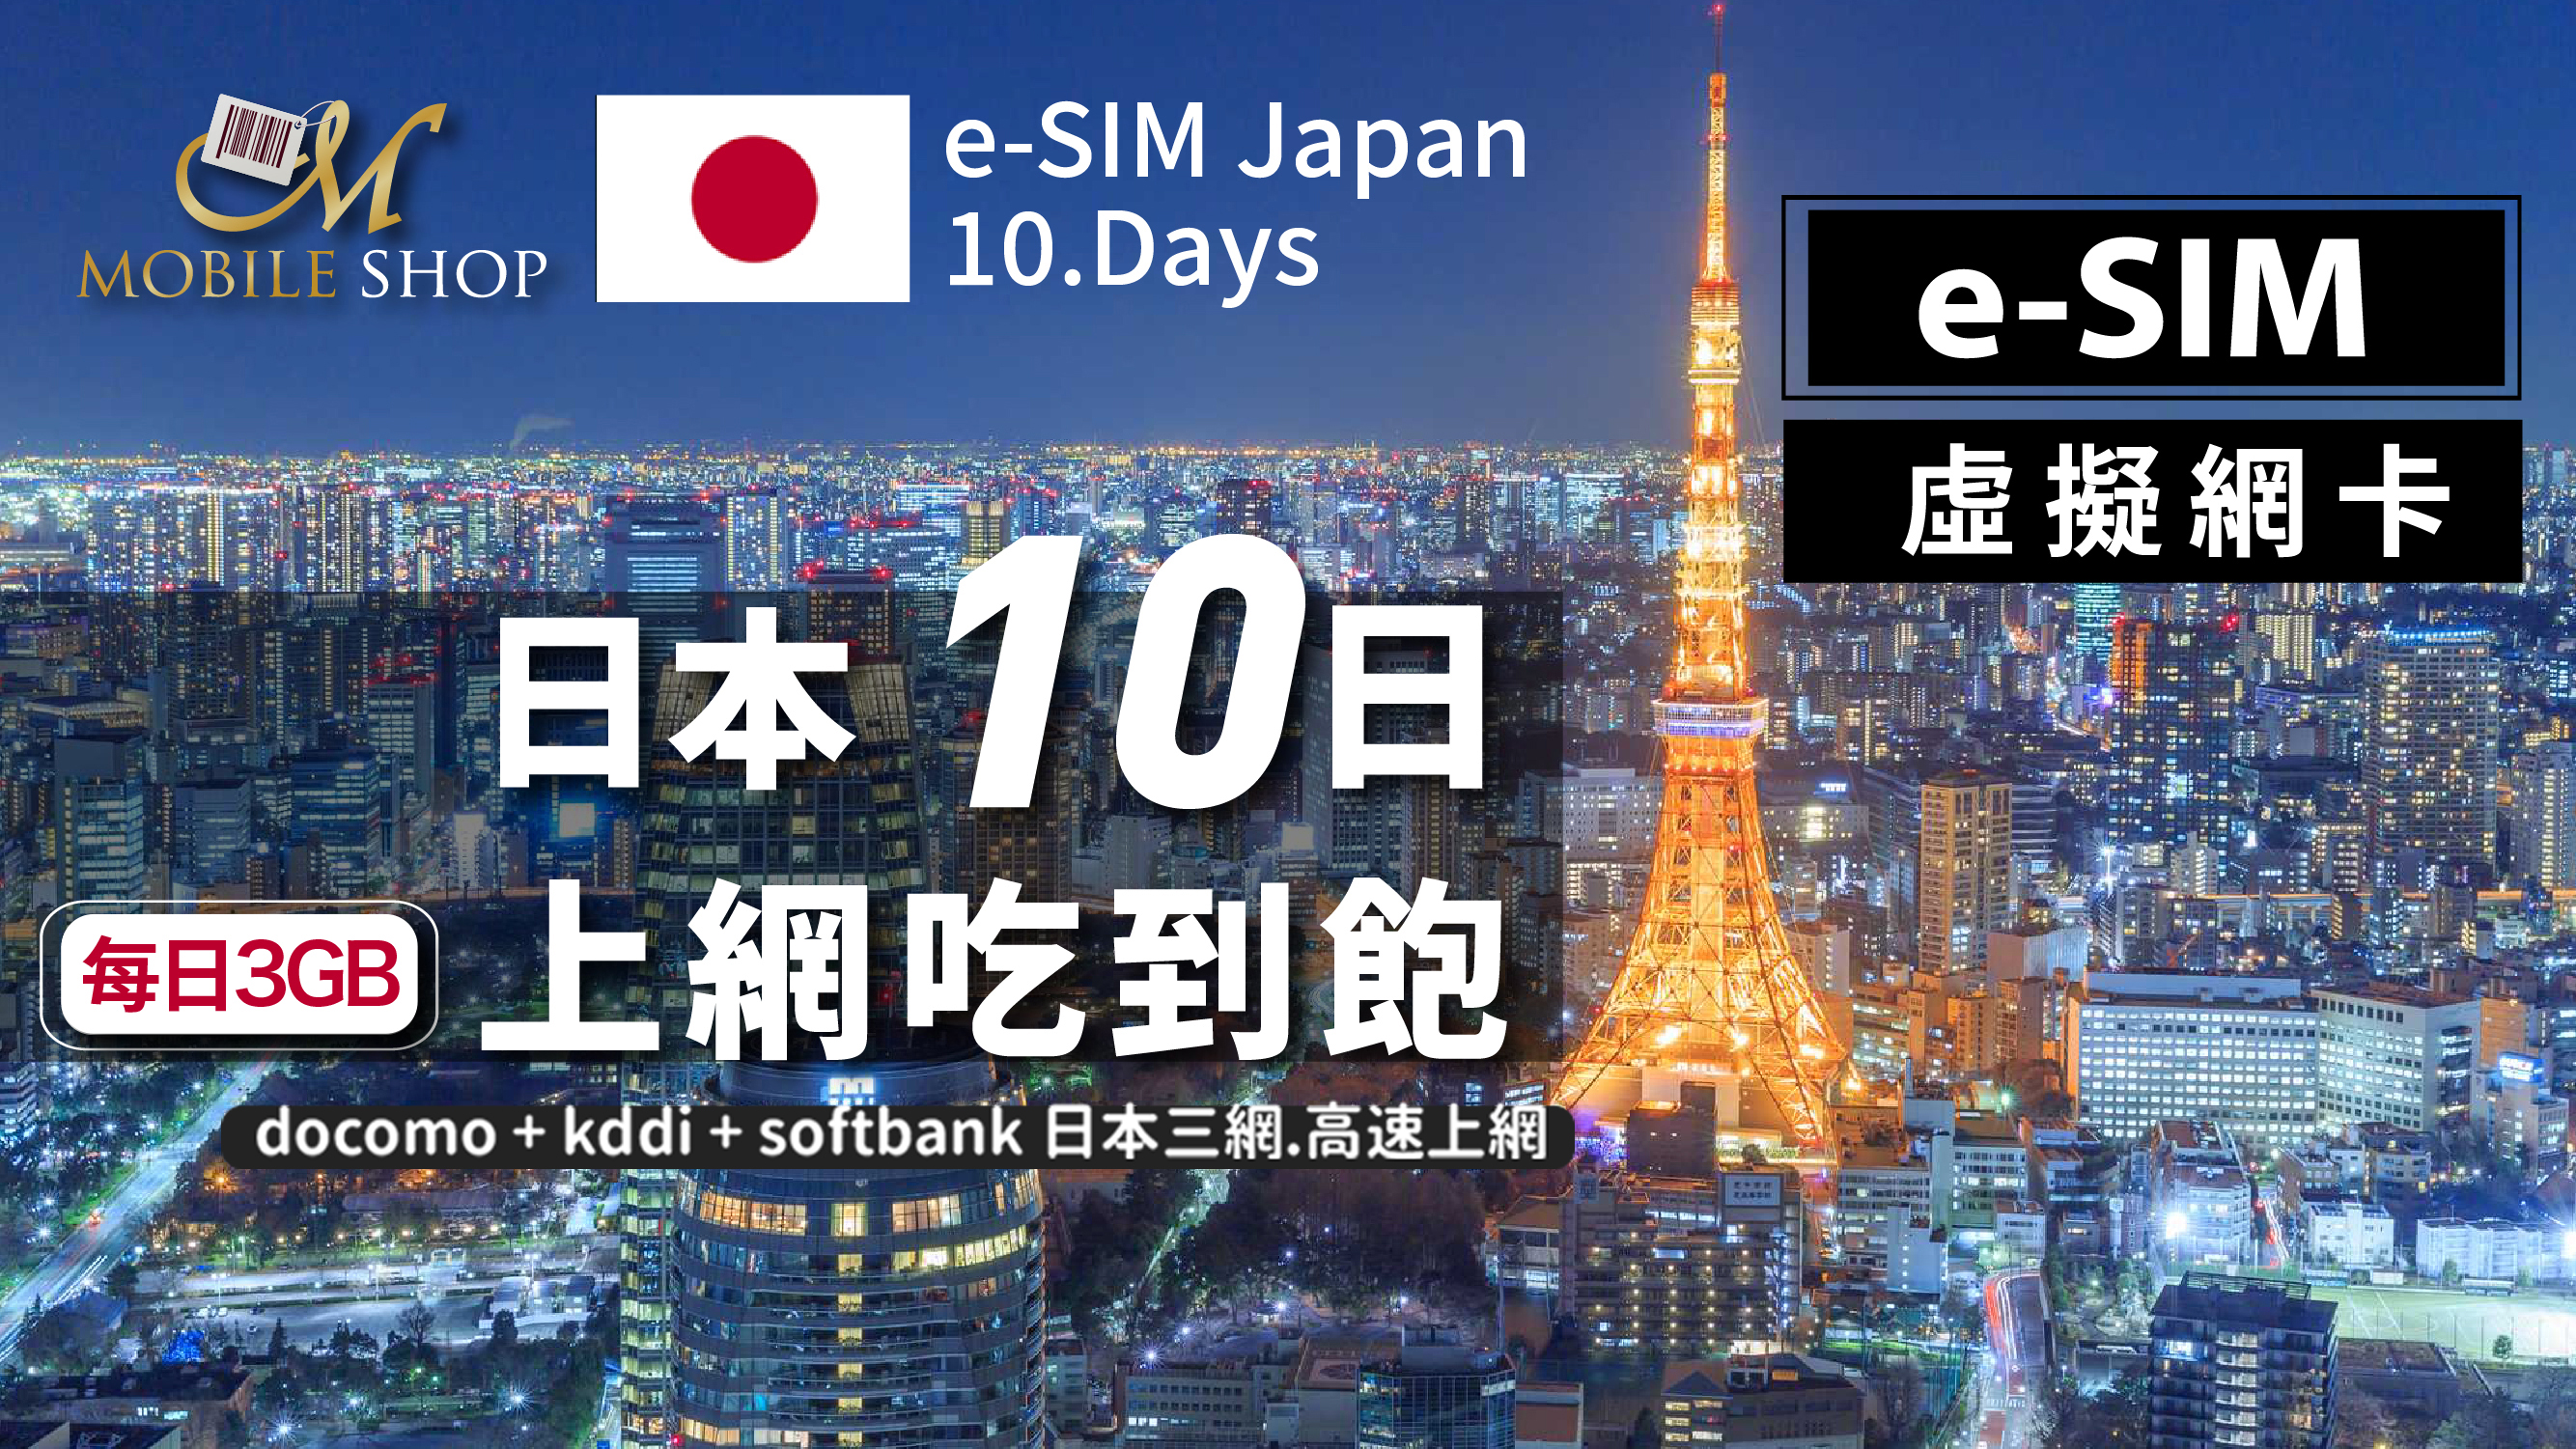 eSIM Japan 10days/3GB day unlimited data